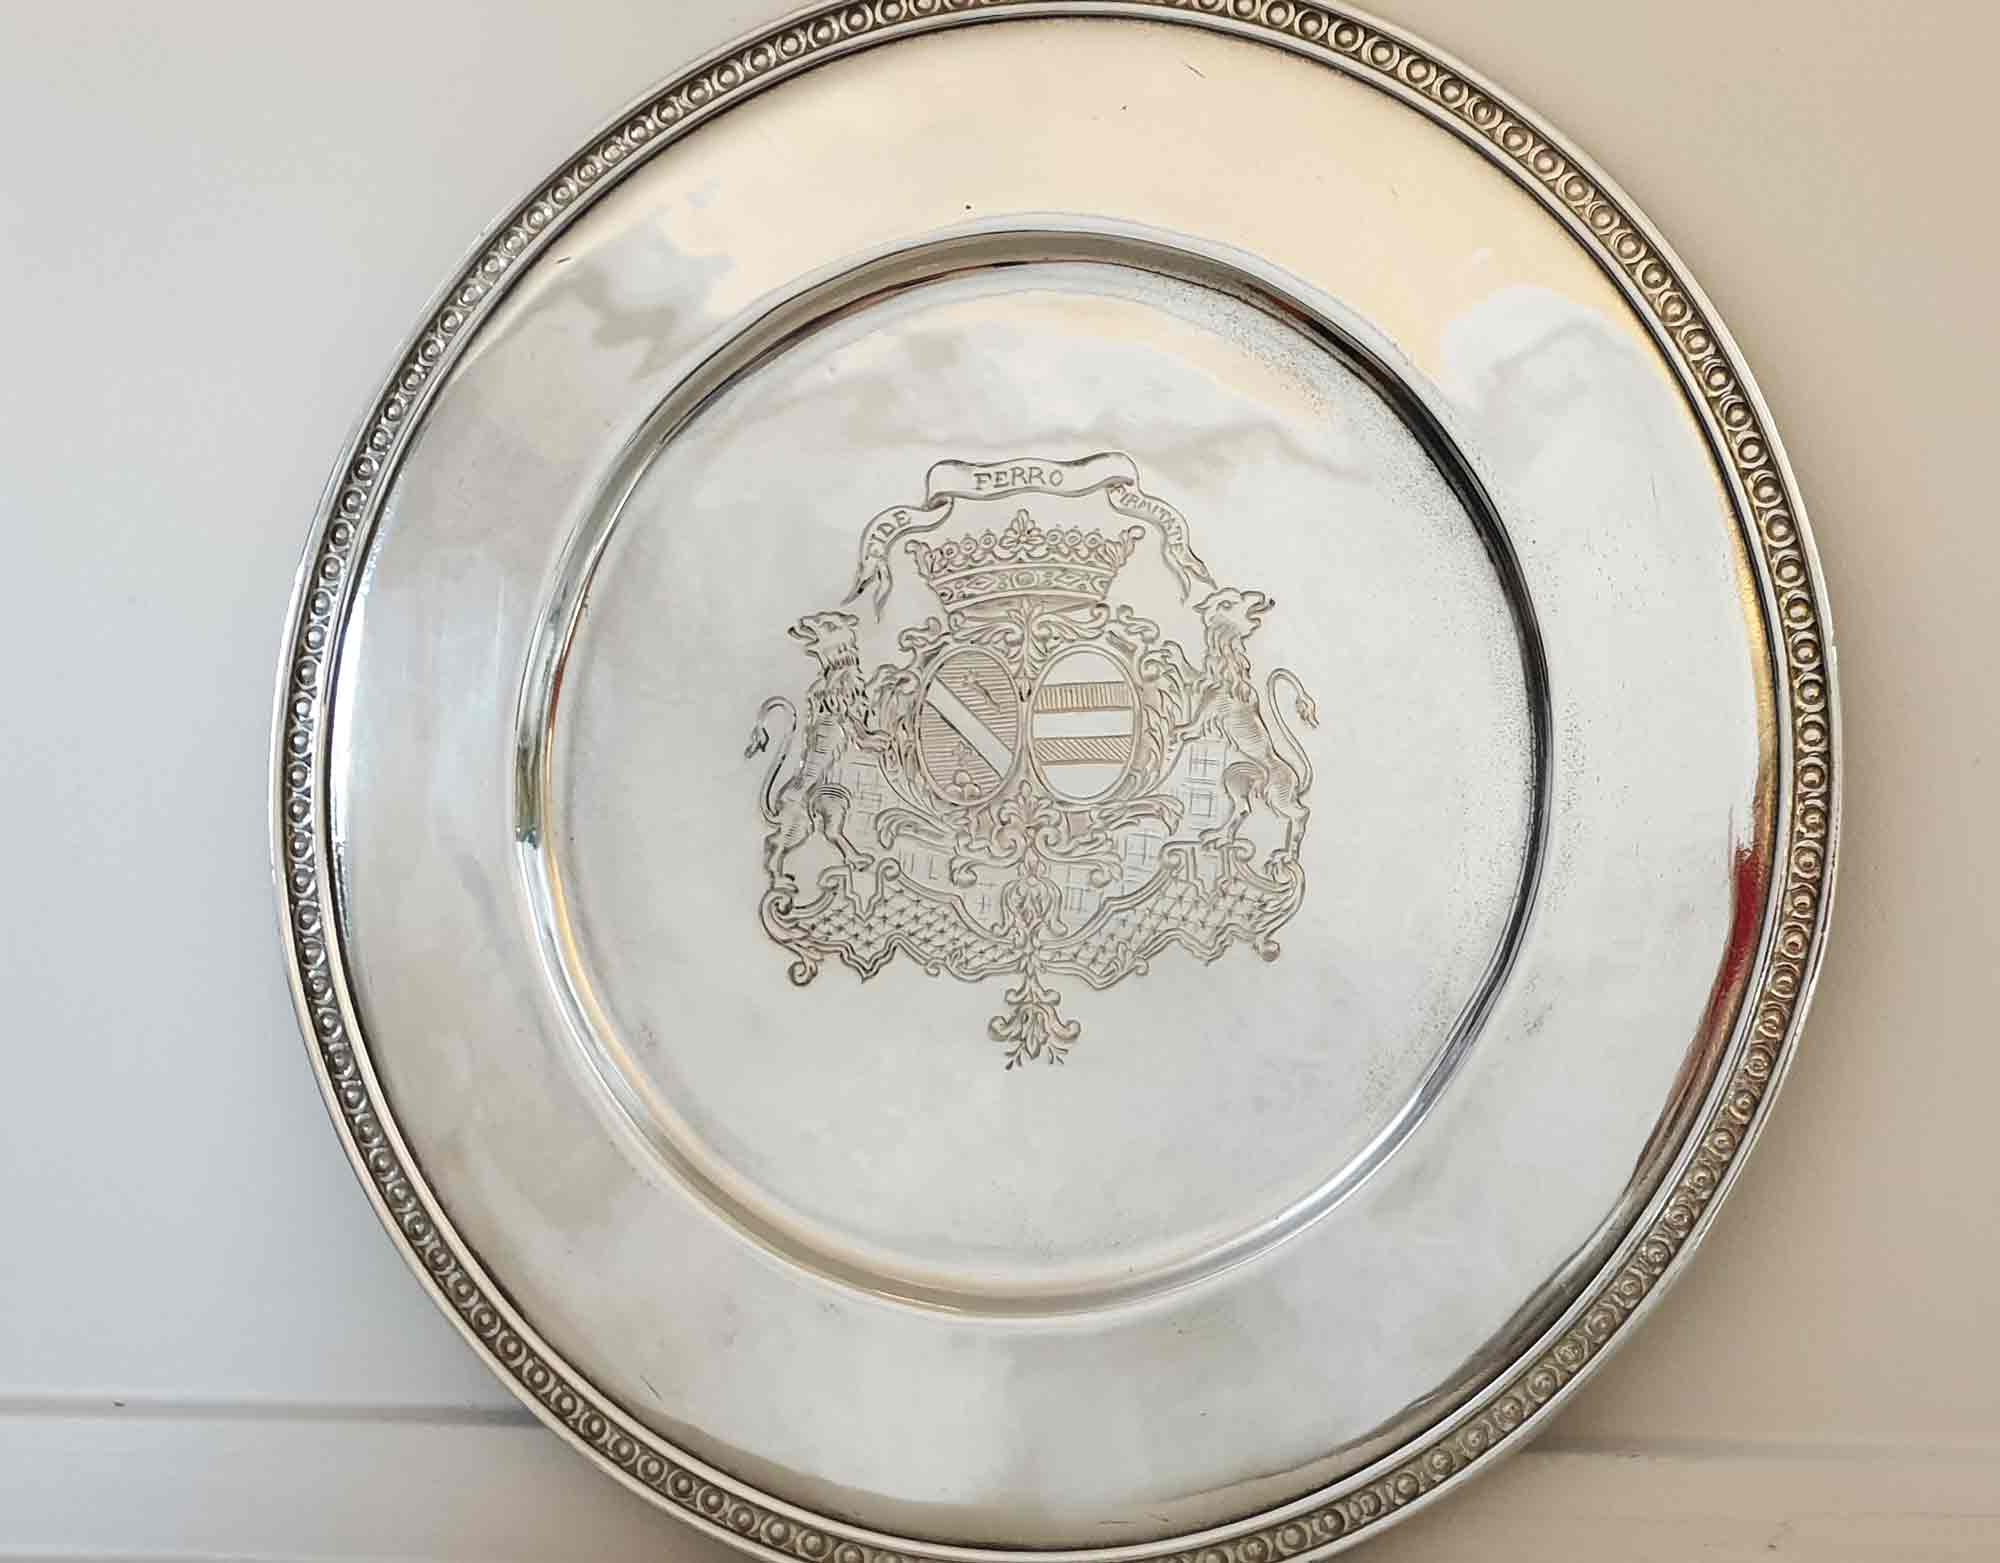 gravure sur assiette heraldique en etain aspect argent massif